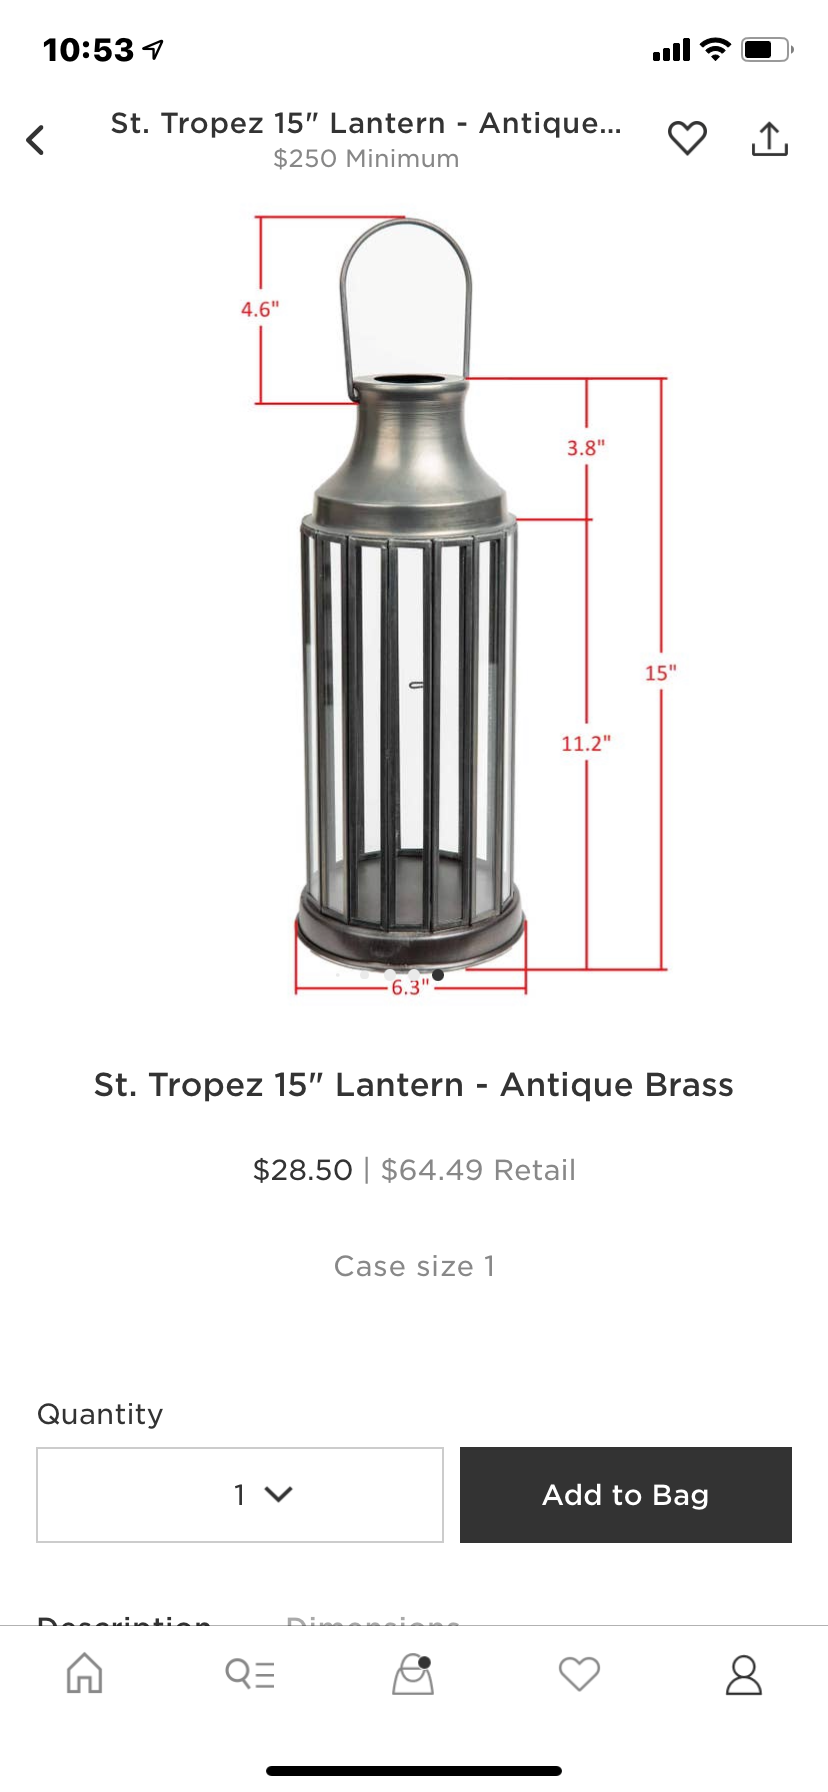 St. Tropez 15" Lantern - Antique Brass - Jo’s Vintage Werks